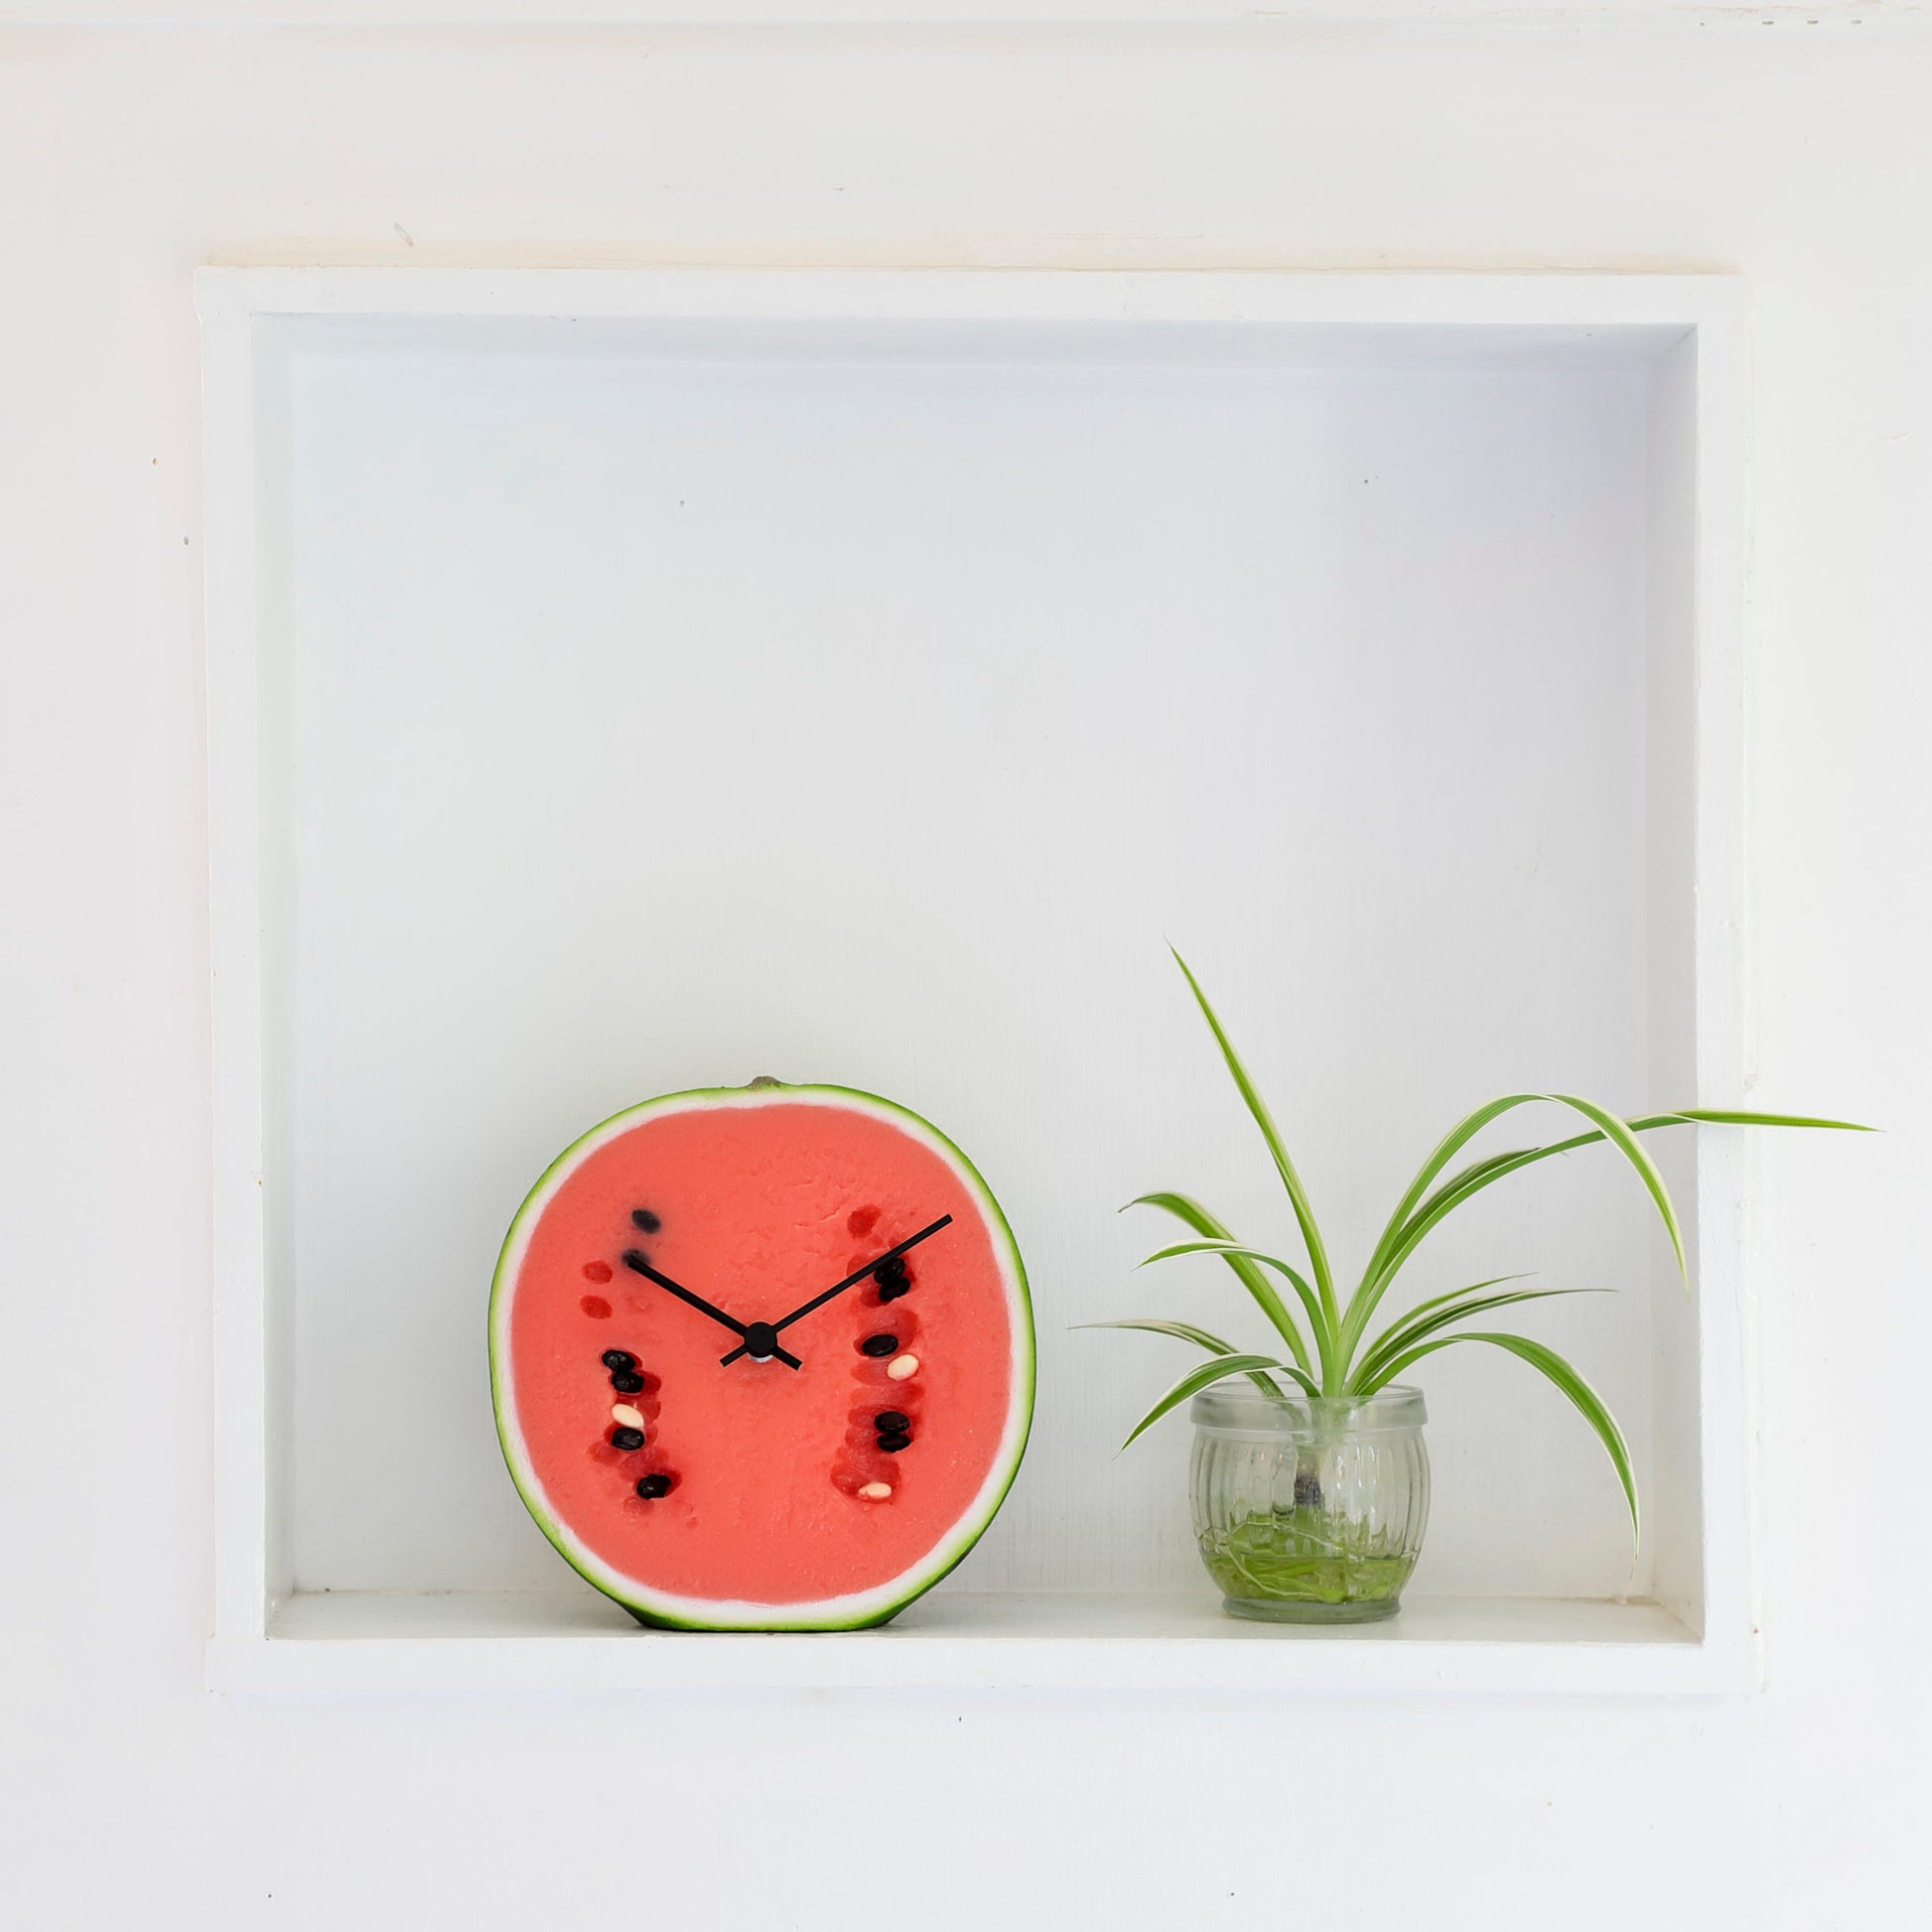 これは元祖食品サンプル屋「Replica Food Clock スイカ 」の植物の隣に置いたイメージ写真です。